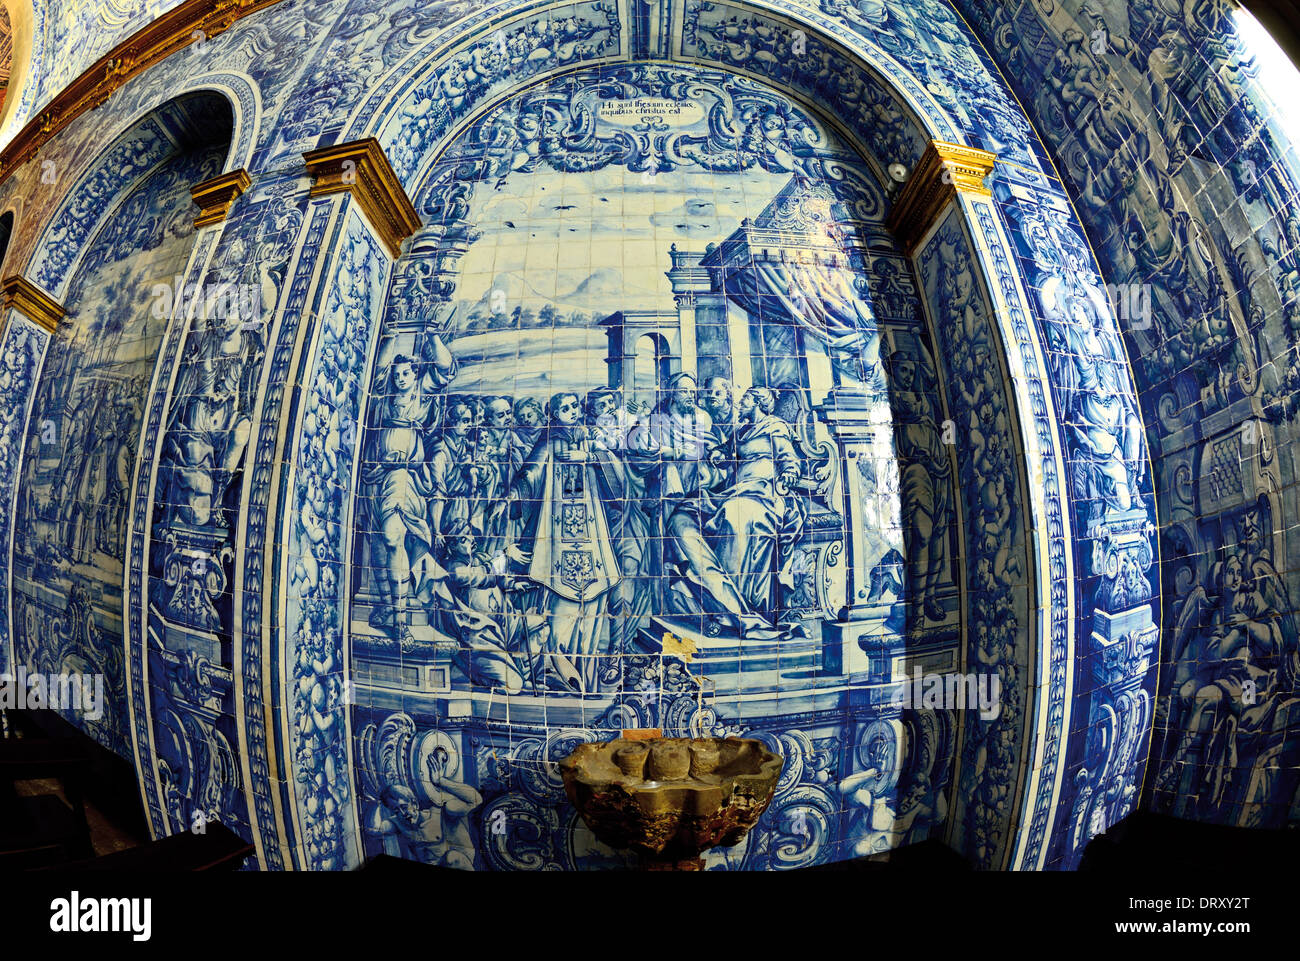 Portugal, Algarve: Historische Fliesen mit Szenen aus dem Leben von Saint Laurence in der Kirche Igreja de Sao Lourenco in Almansil Stockfoto